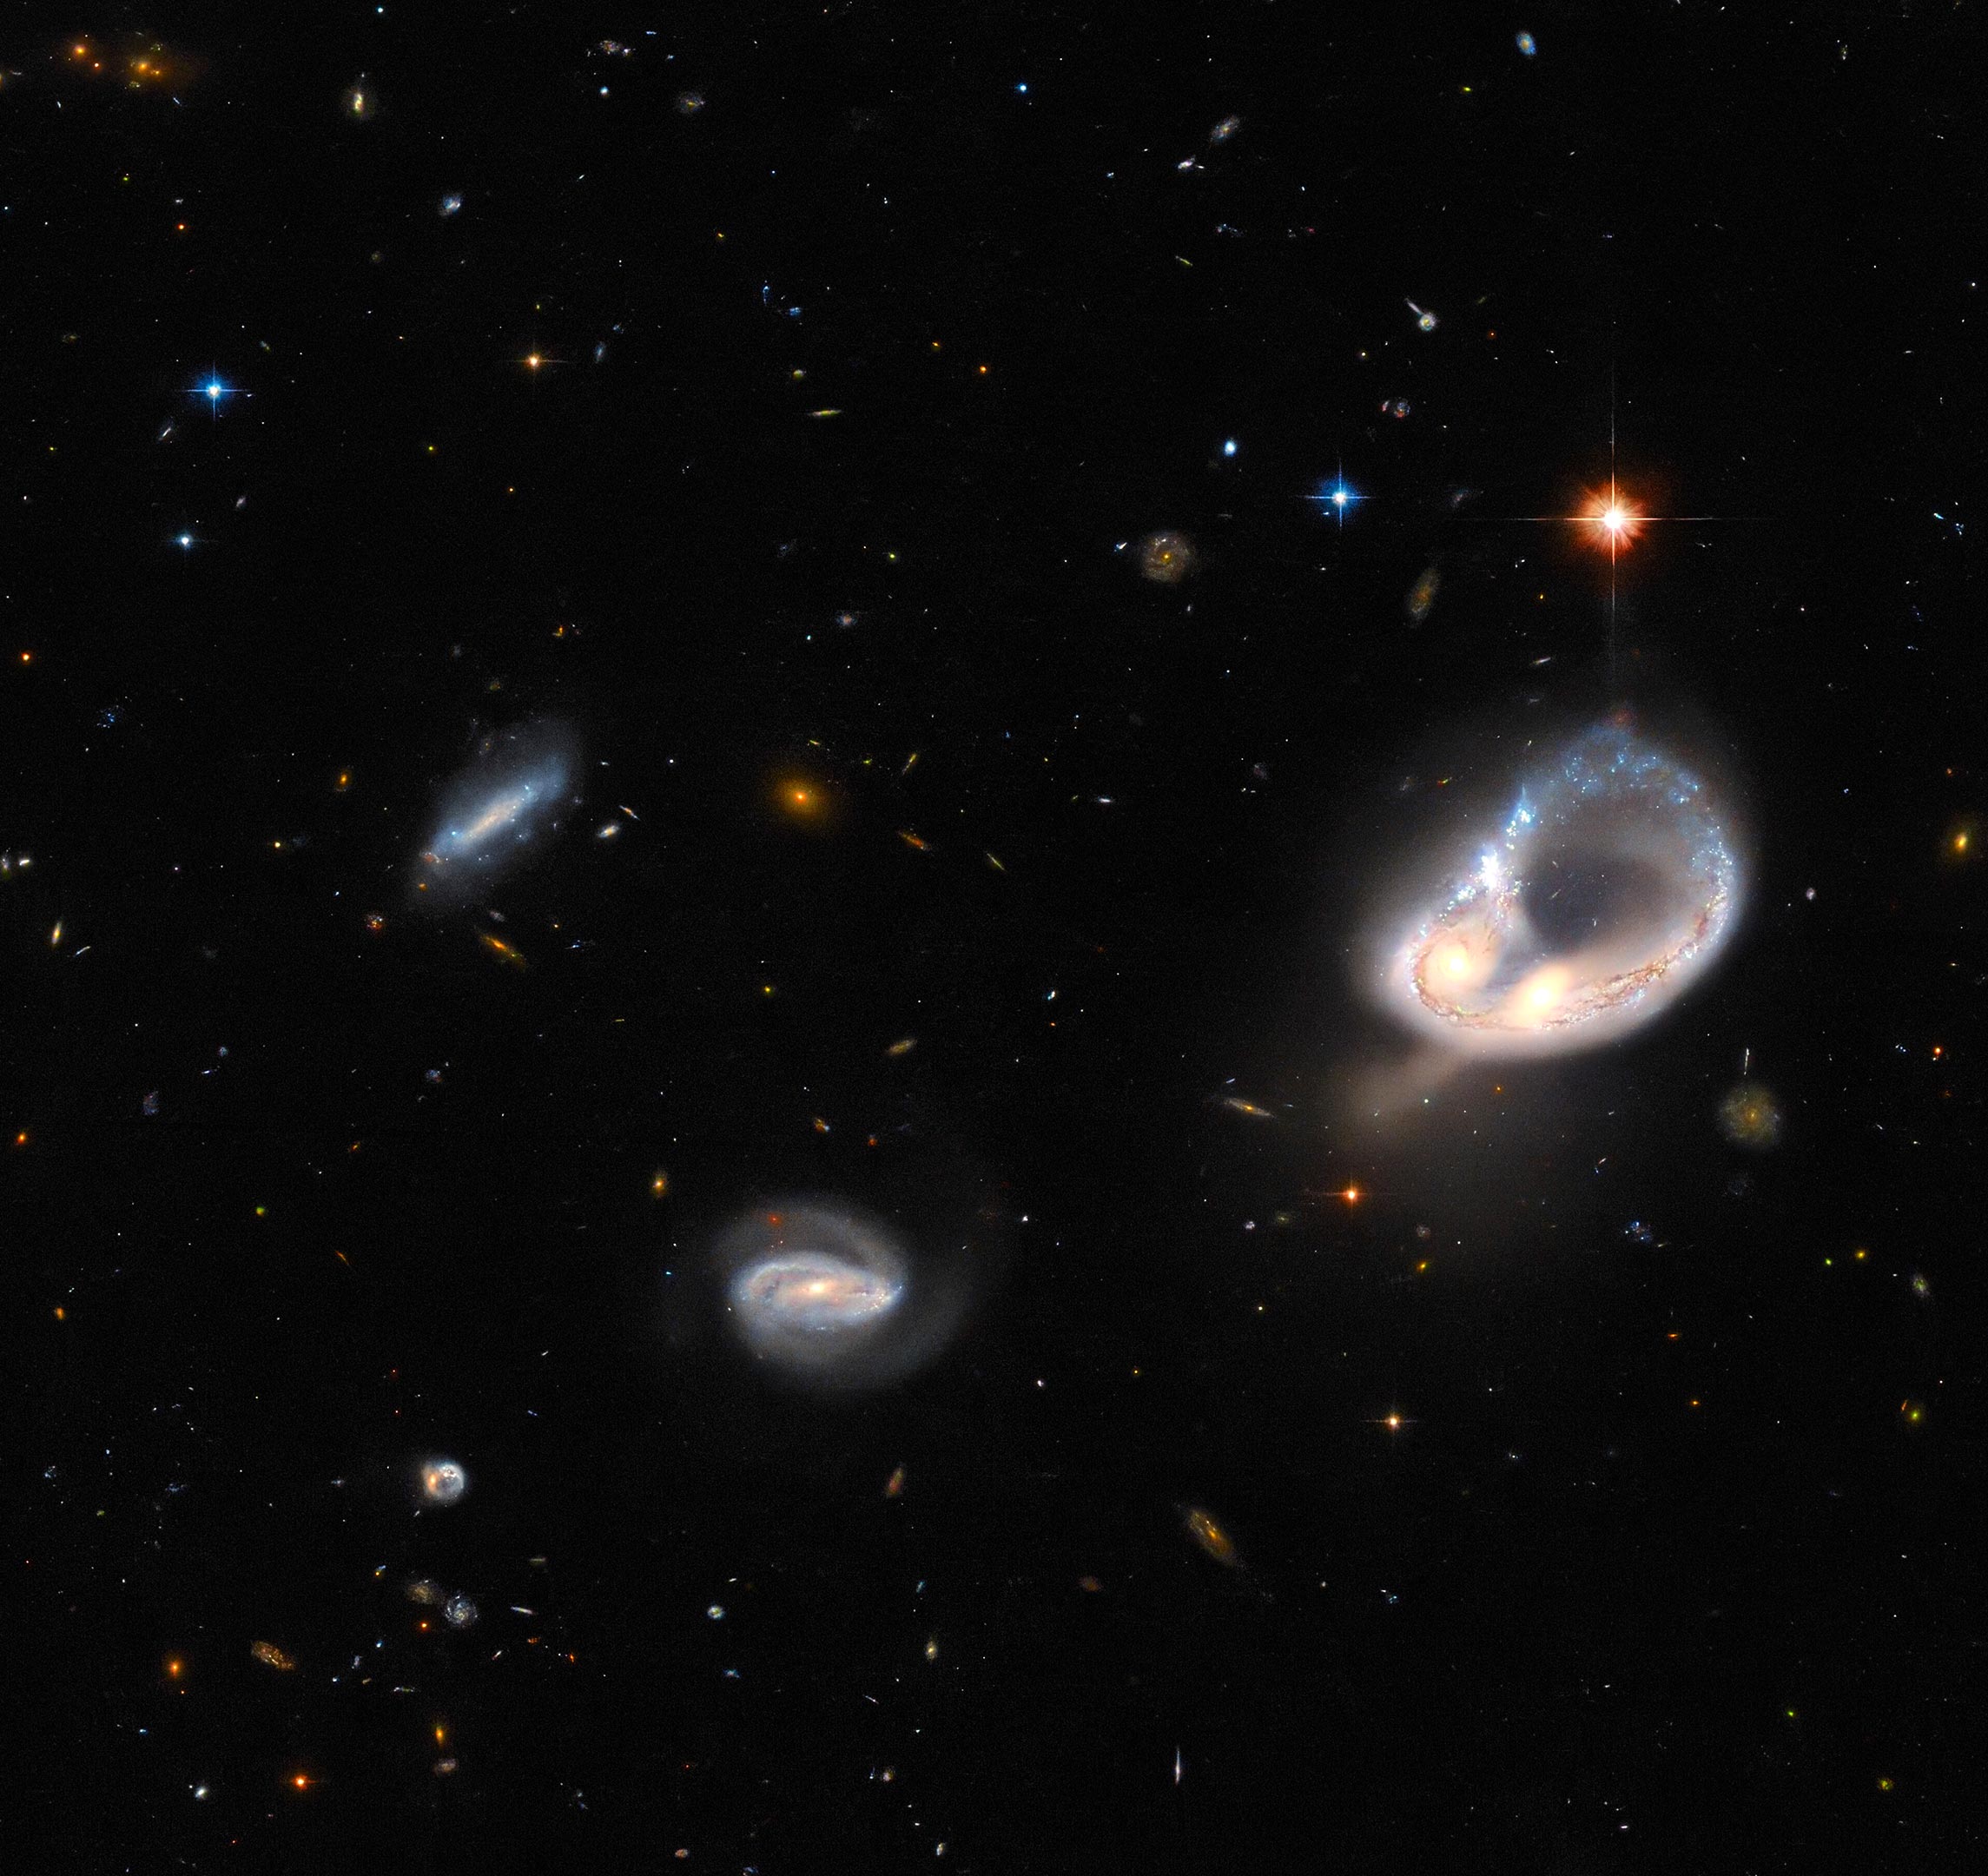 哈勃太空望远镜拍摄的Arp-Madore 417-391星系合并壮观场景